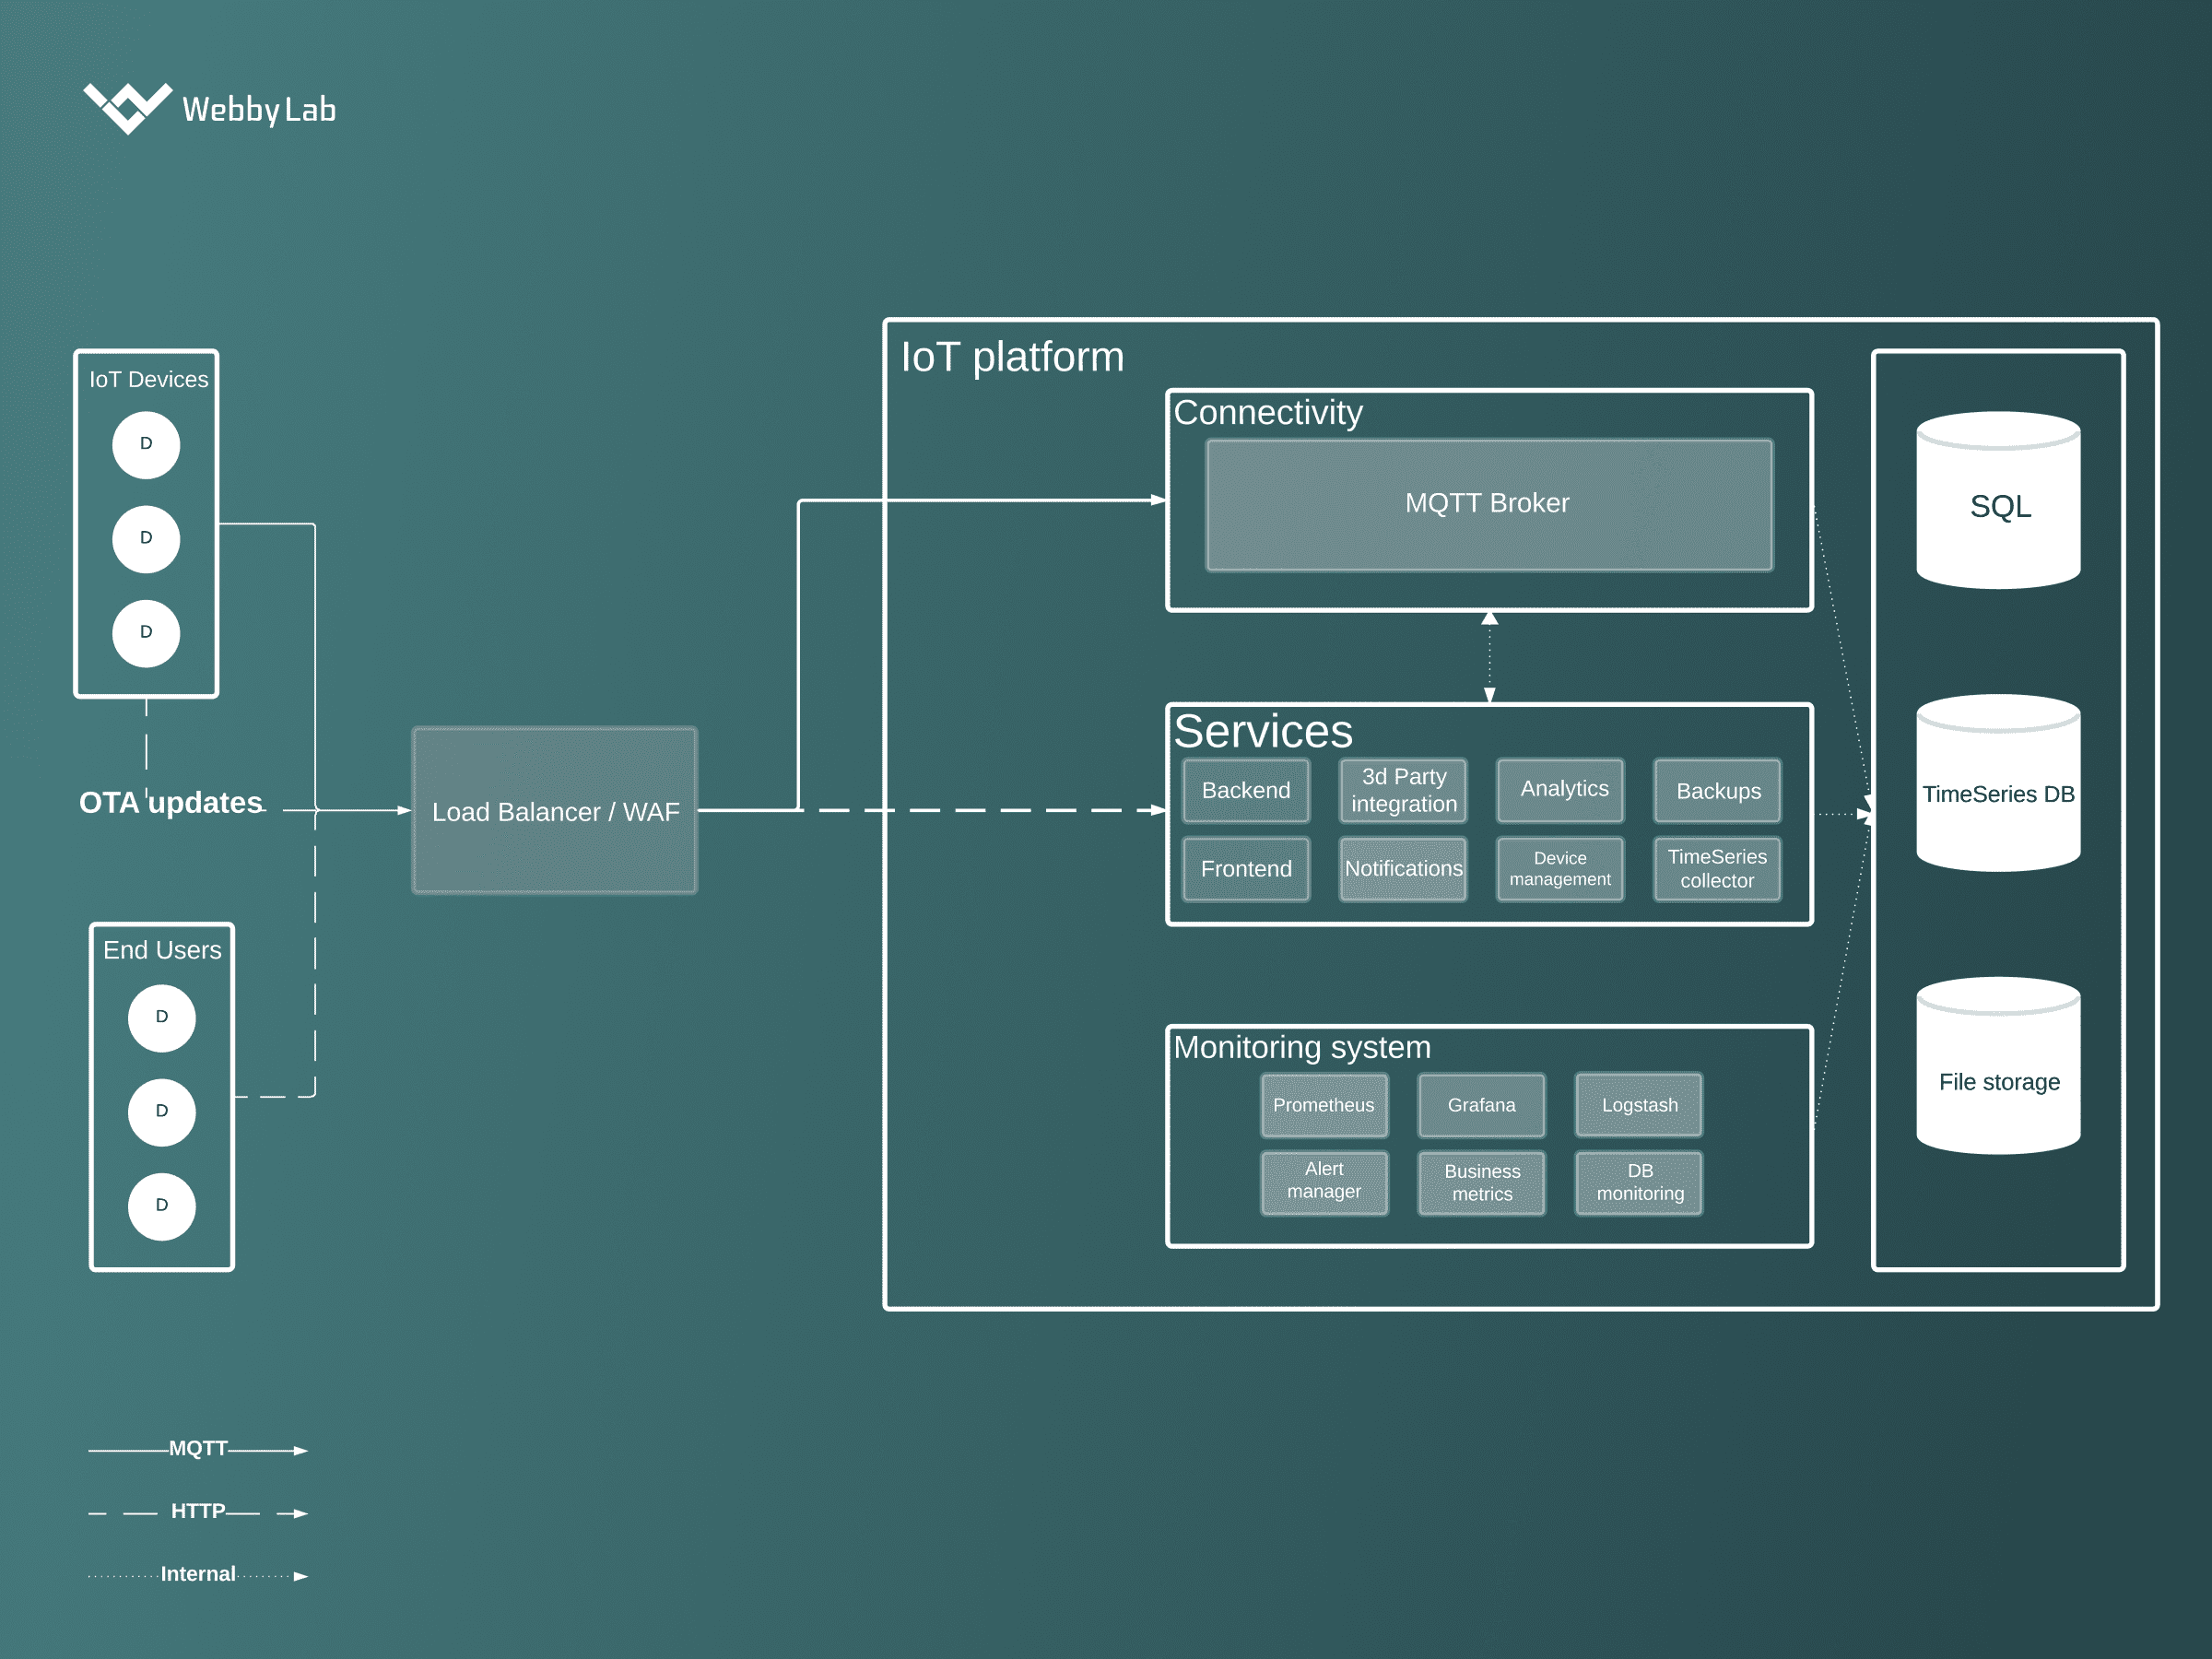 A common IoT architecture diagram.